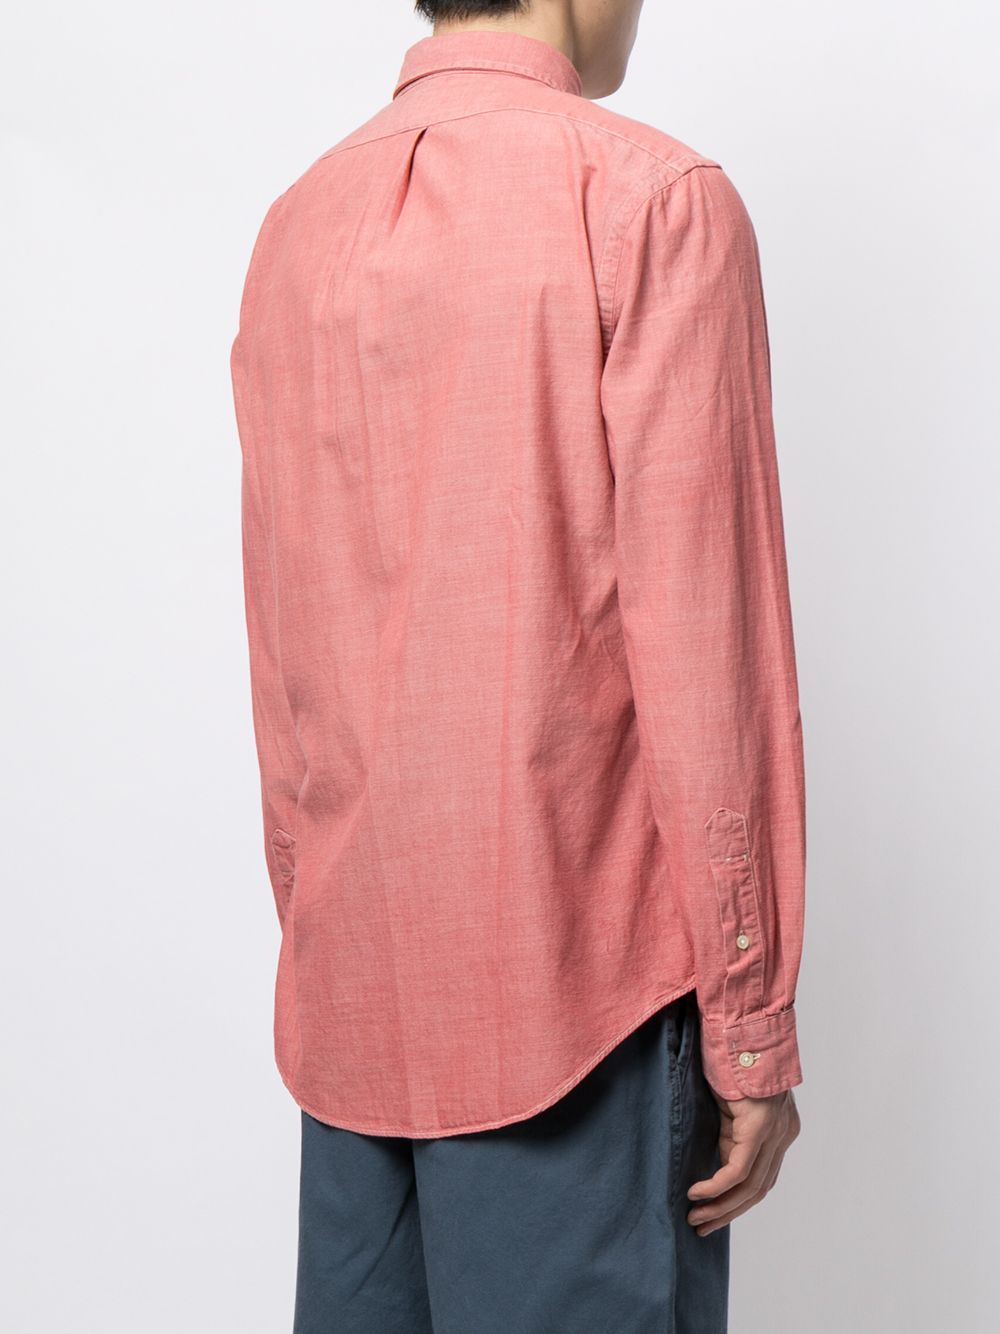 фото Polo ralph lauren рубашка с длинными рукавами